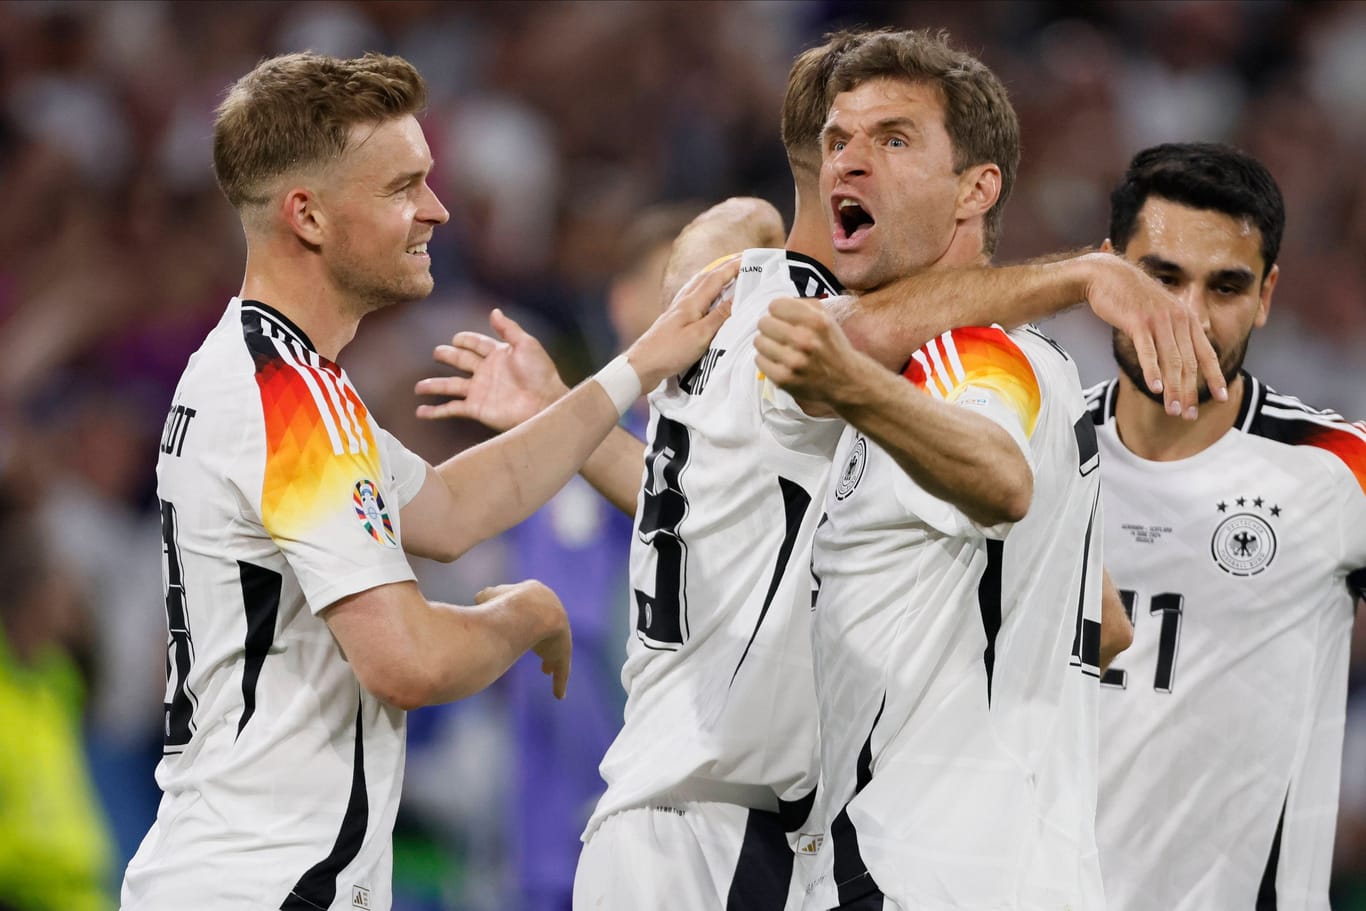 Jubel bei der deutschen Mannschaft: Gegen Schottland gab es einen deutlichen Auftaktsieg in die Heim-EM.